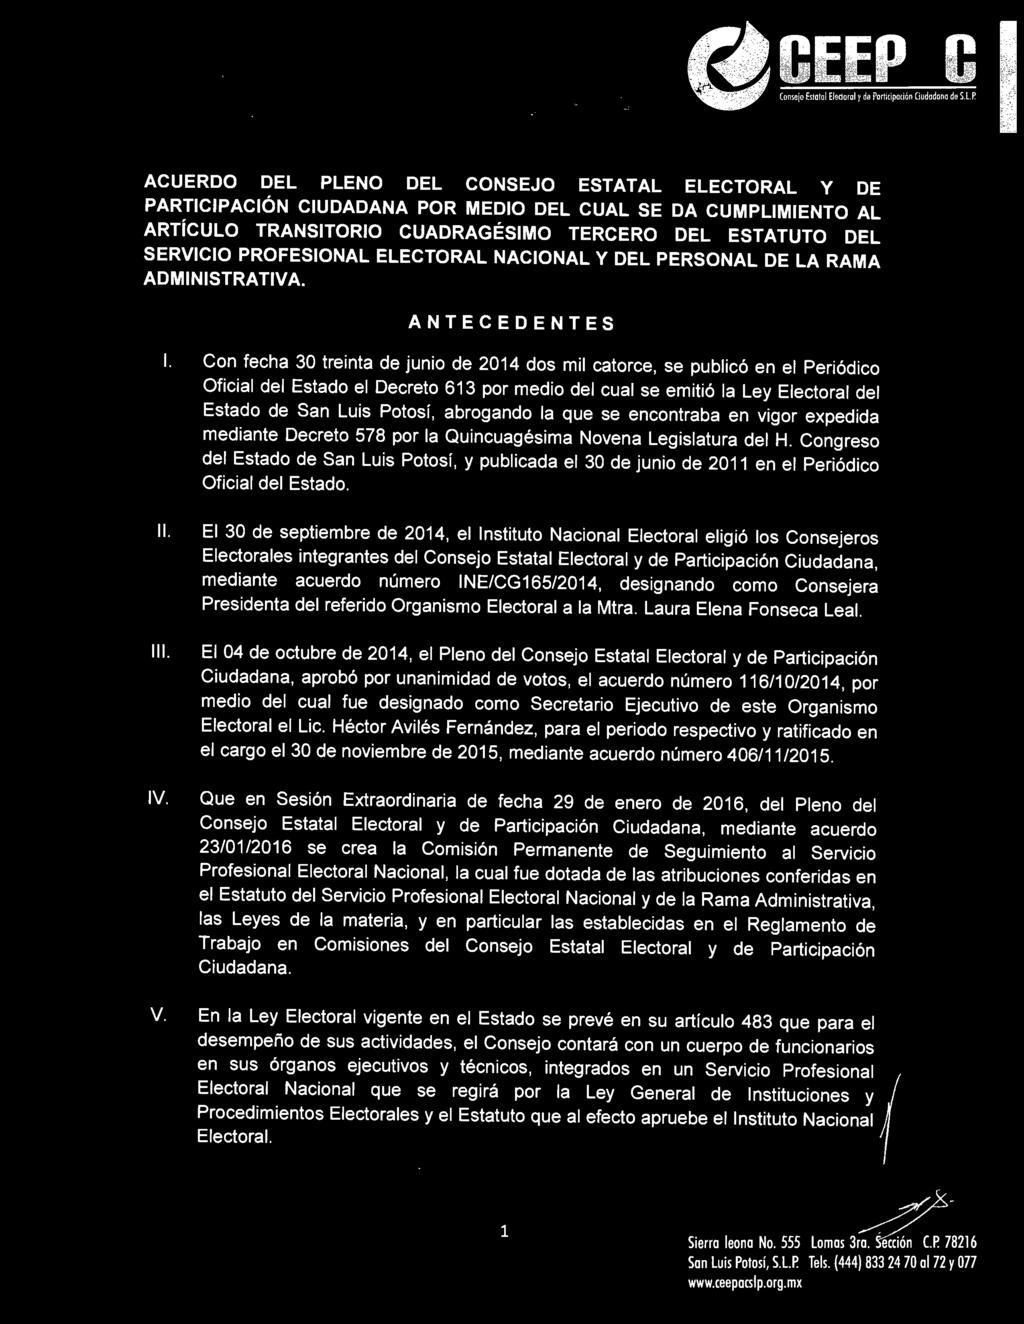 Congreso del Estado de San Luis Potosí, y publicada el 30 de junio de 2011 en el Periódico Oficial del Estado. 11.